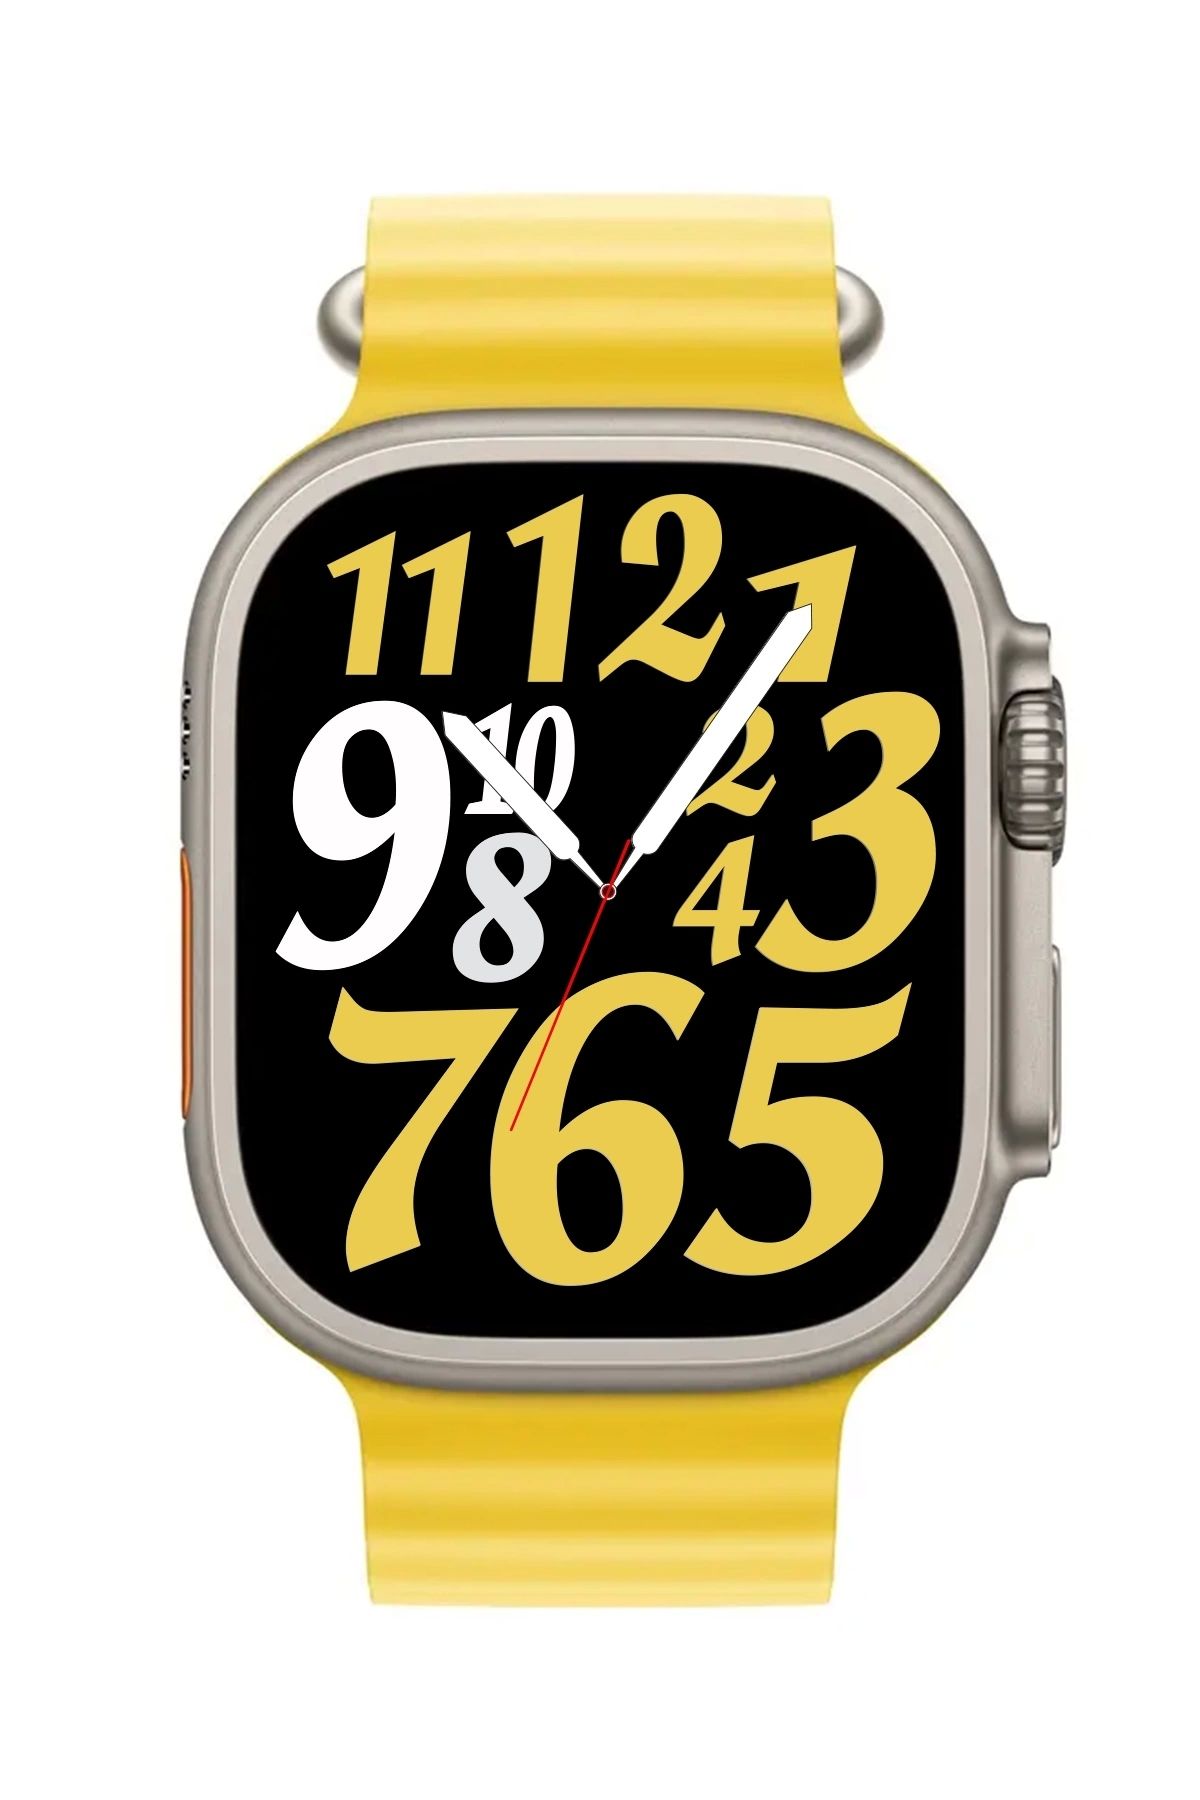 zmsmart Watch 8 Ultra Smart Watch Değiştirilebilir Kordon Akıllı Saat Zmsw8 Gümüş-sarı